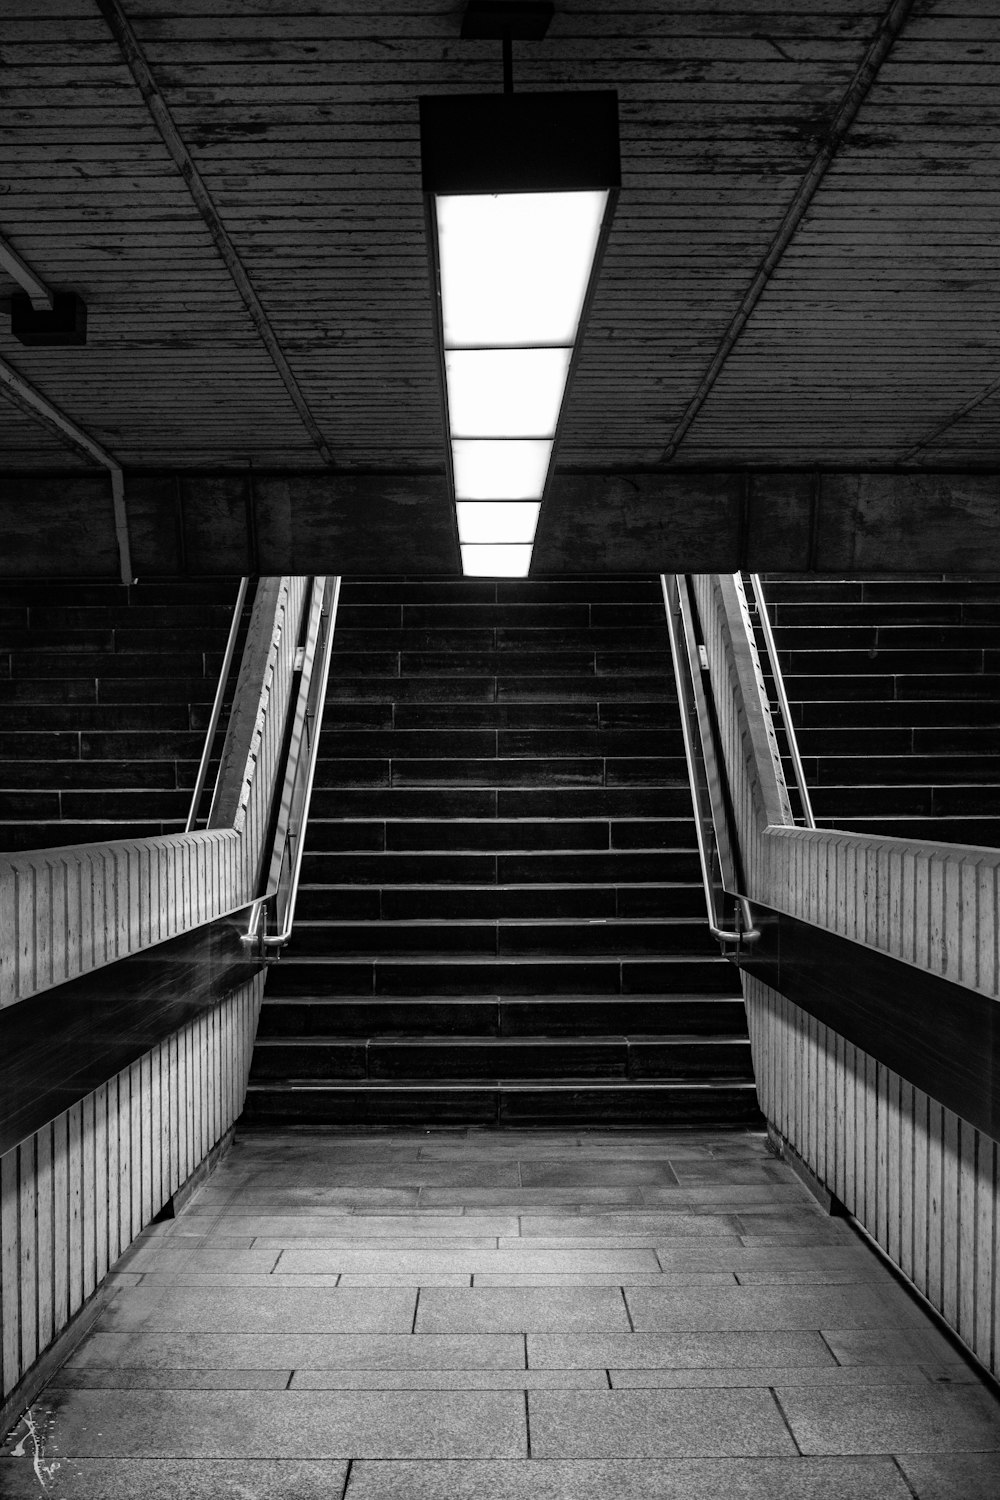 Photographie en niveaux de gris d’escaliers de métro